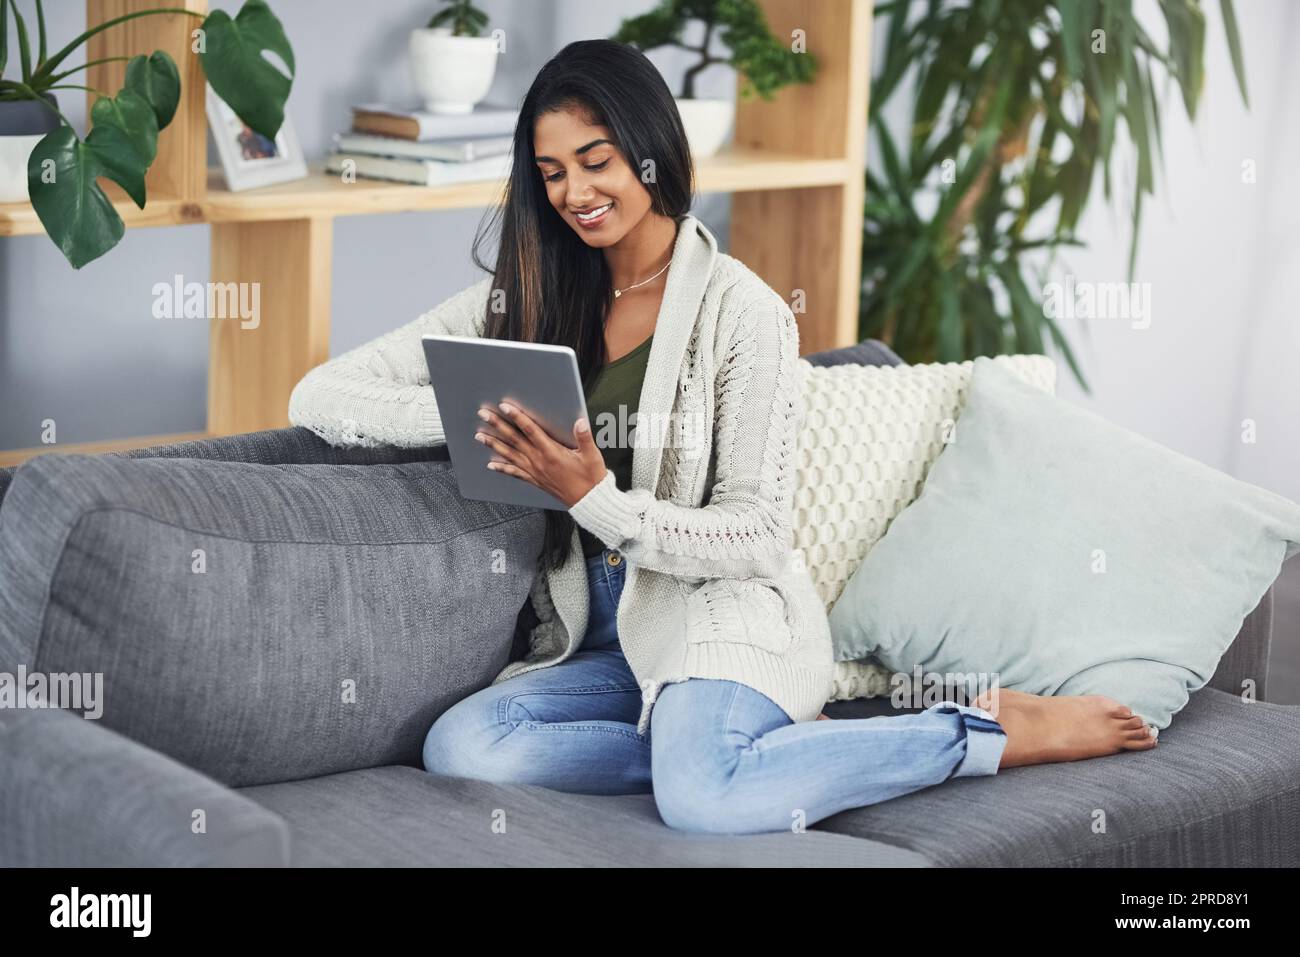 Finden Sie die beste Seite, um Ihren freien Tag zu unterhalten. Eine glückliche junge Frau mit ihrem digitalen Tablet, während sie sich auf ihrer Couch zu Hause entspannt. Stockfoto